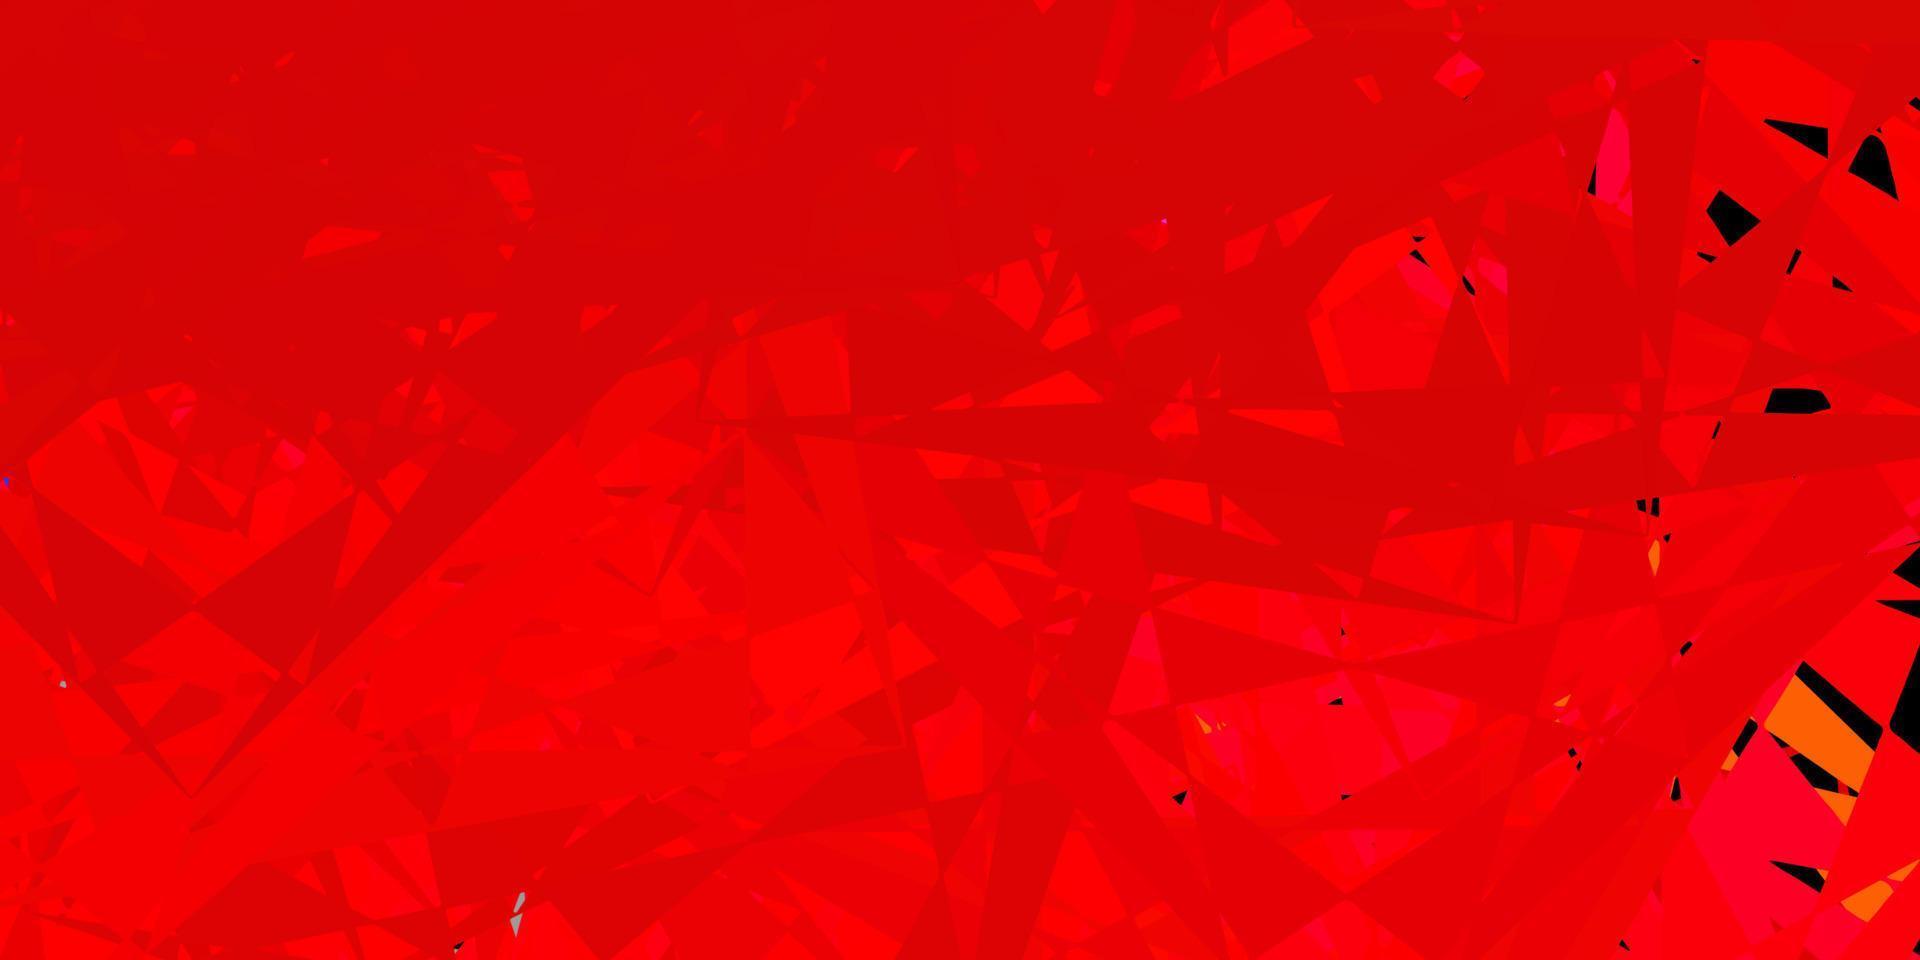 mörk röd vektor bakgrund med polygonala former.